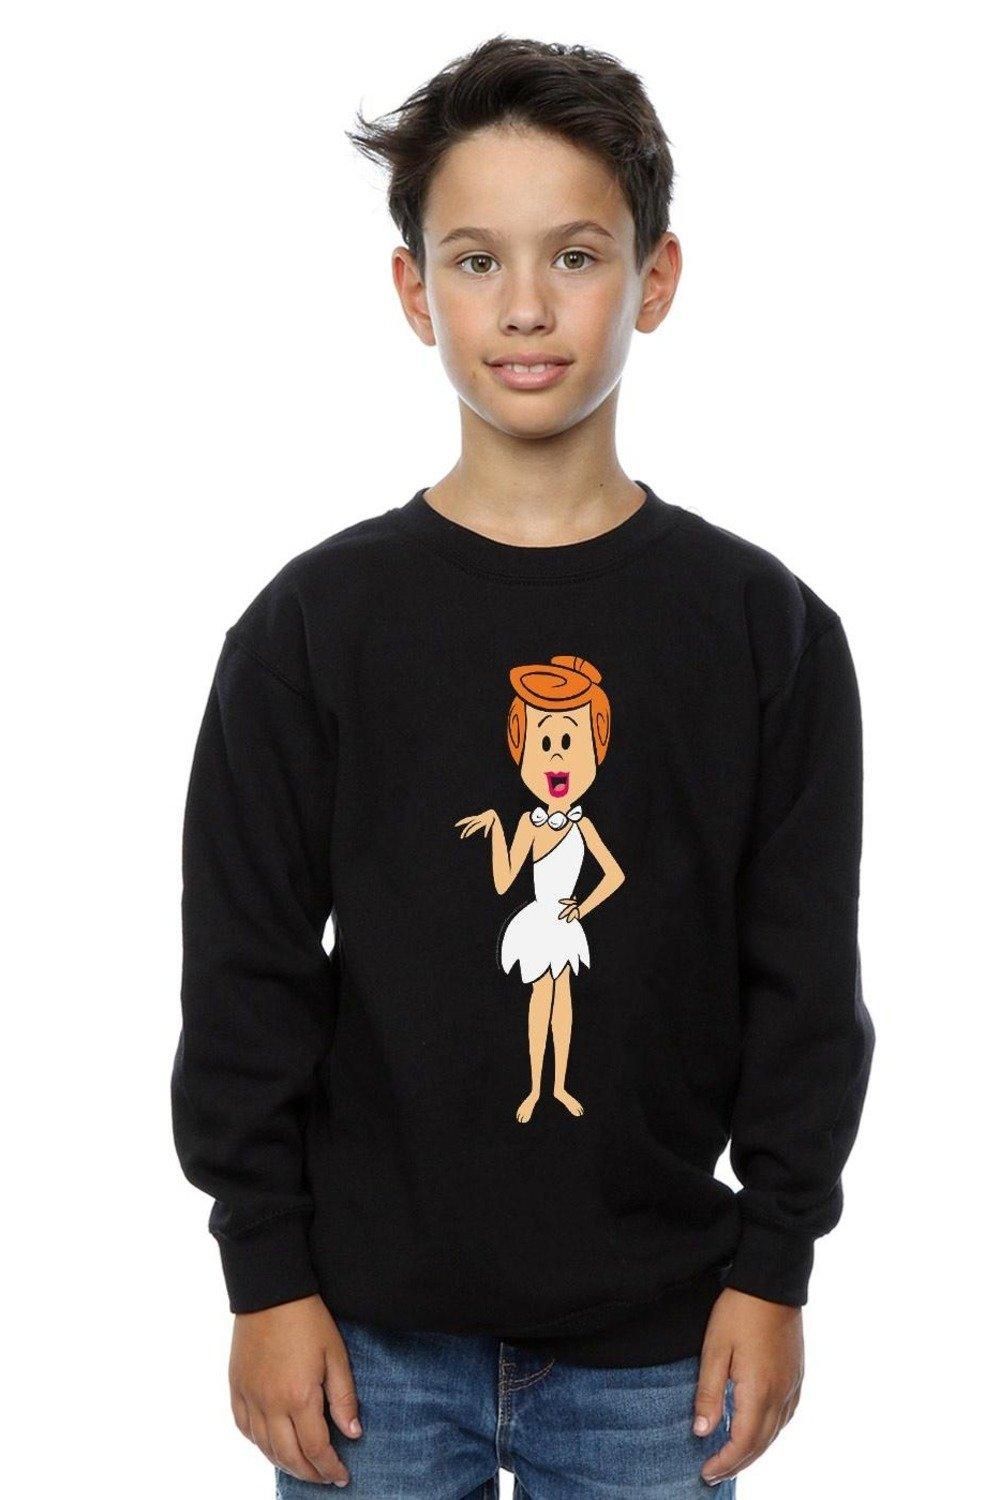 Wilma Flintstone Classic Pose Sweatshirt